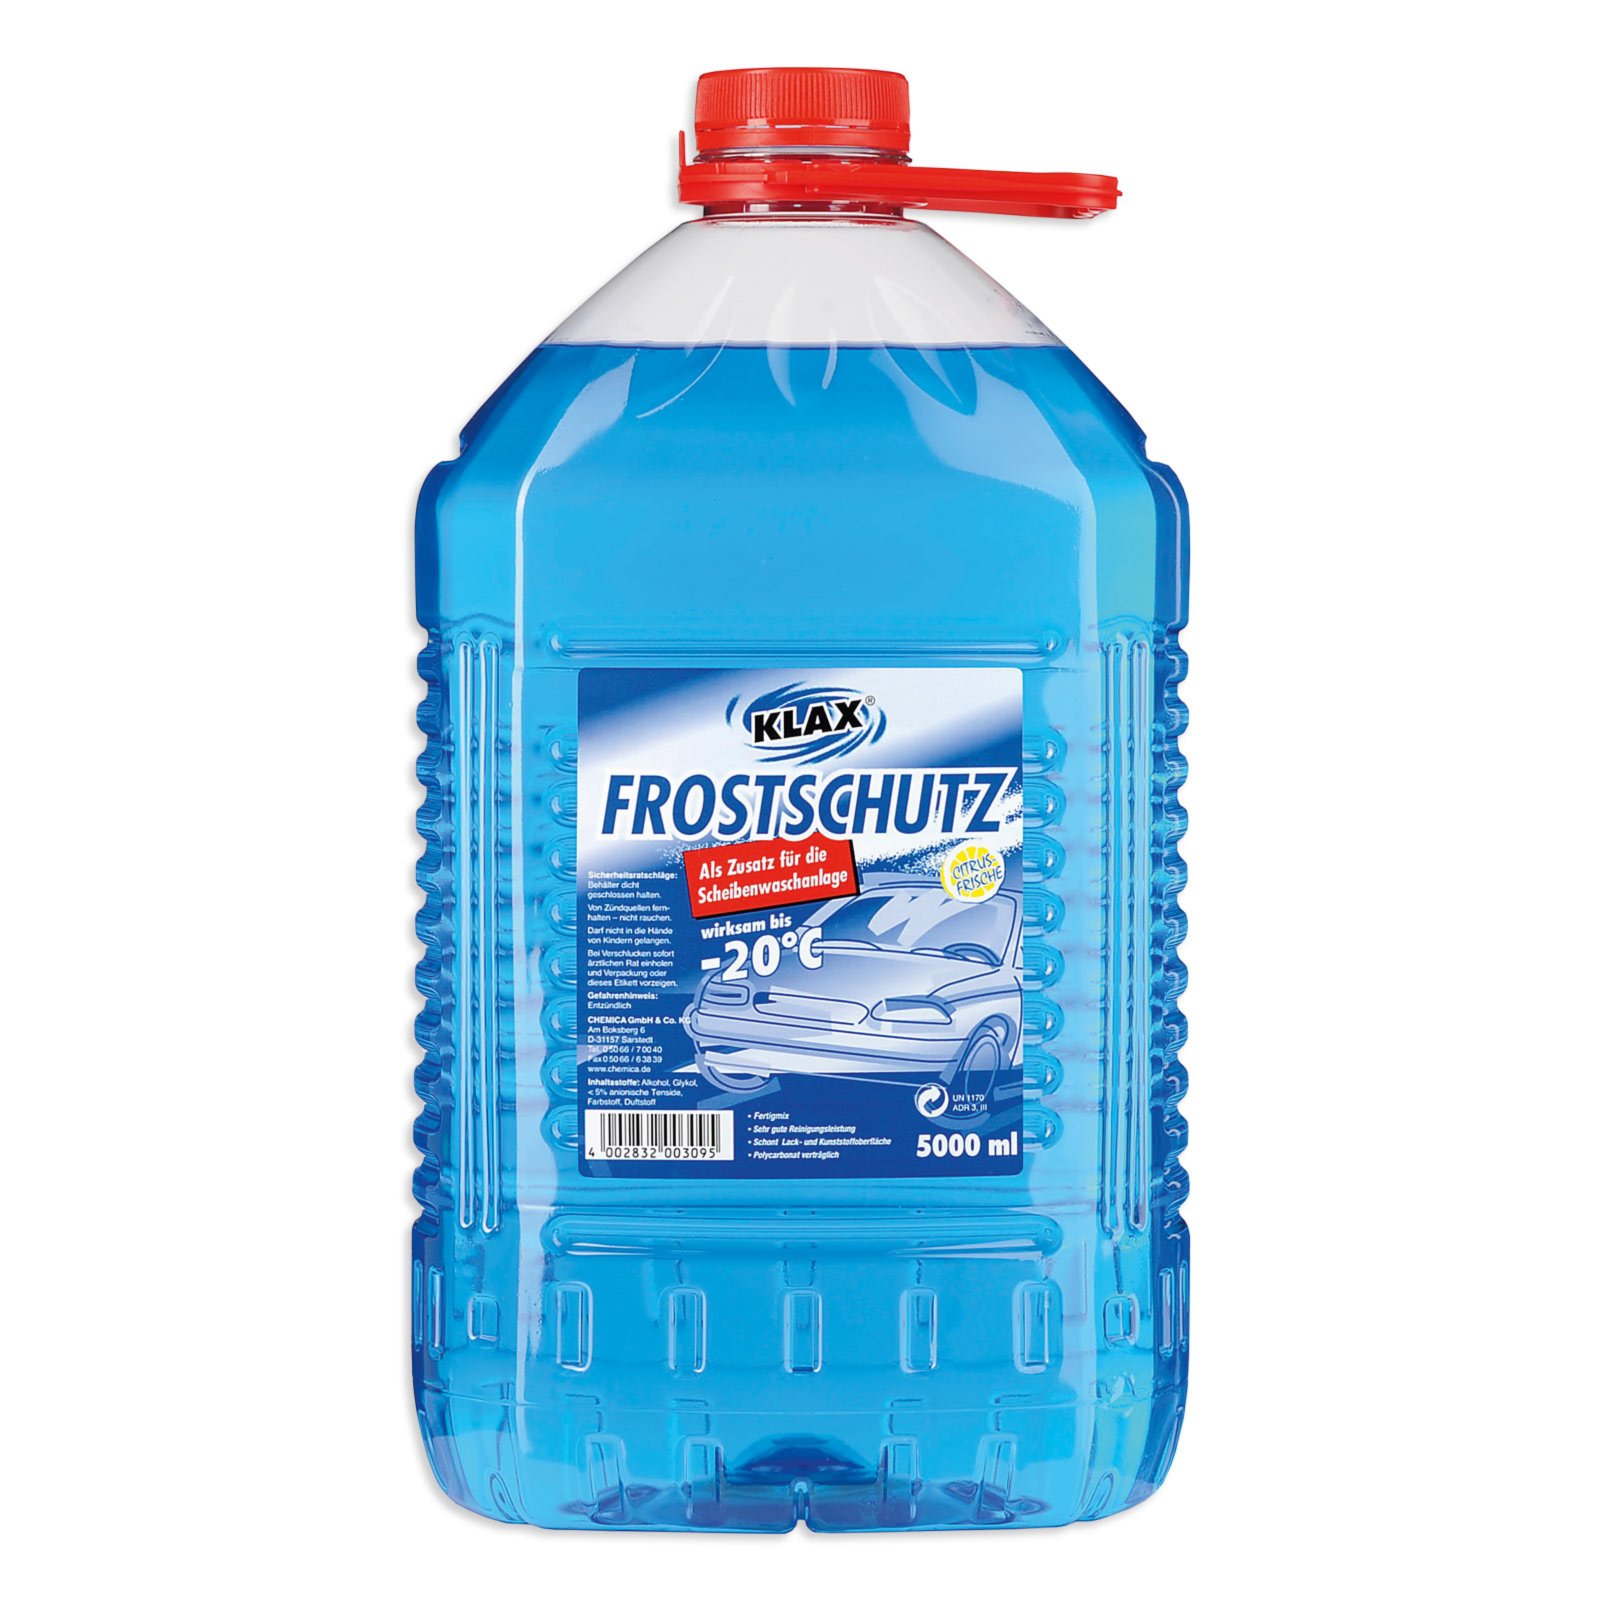 Nach der Abfüllung Frostschutzmittel Flüssigkeit der Scheibenwaschanlage in  schmutzigen Auto von Blau und Rot Frostschutzmittel Behälter Detail  Stockfotografie - Alamy